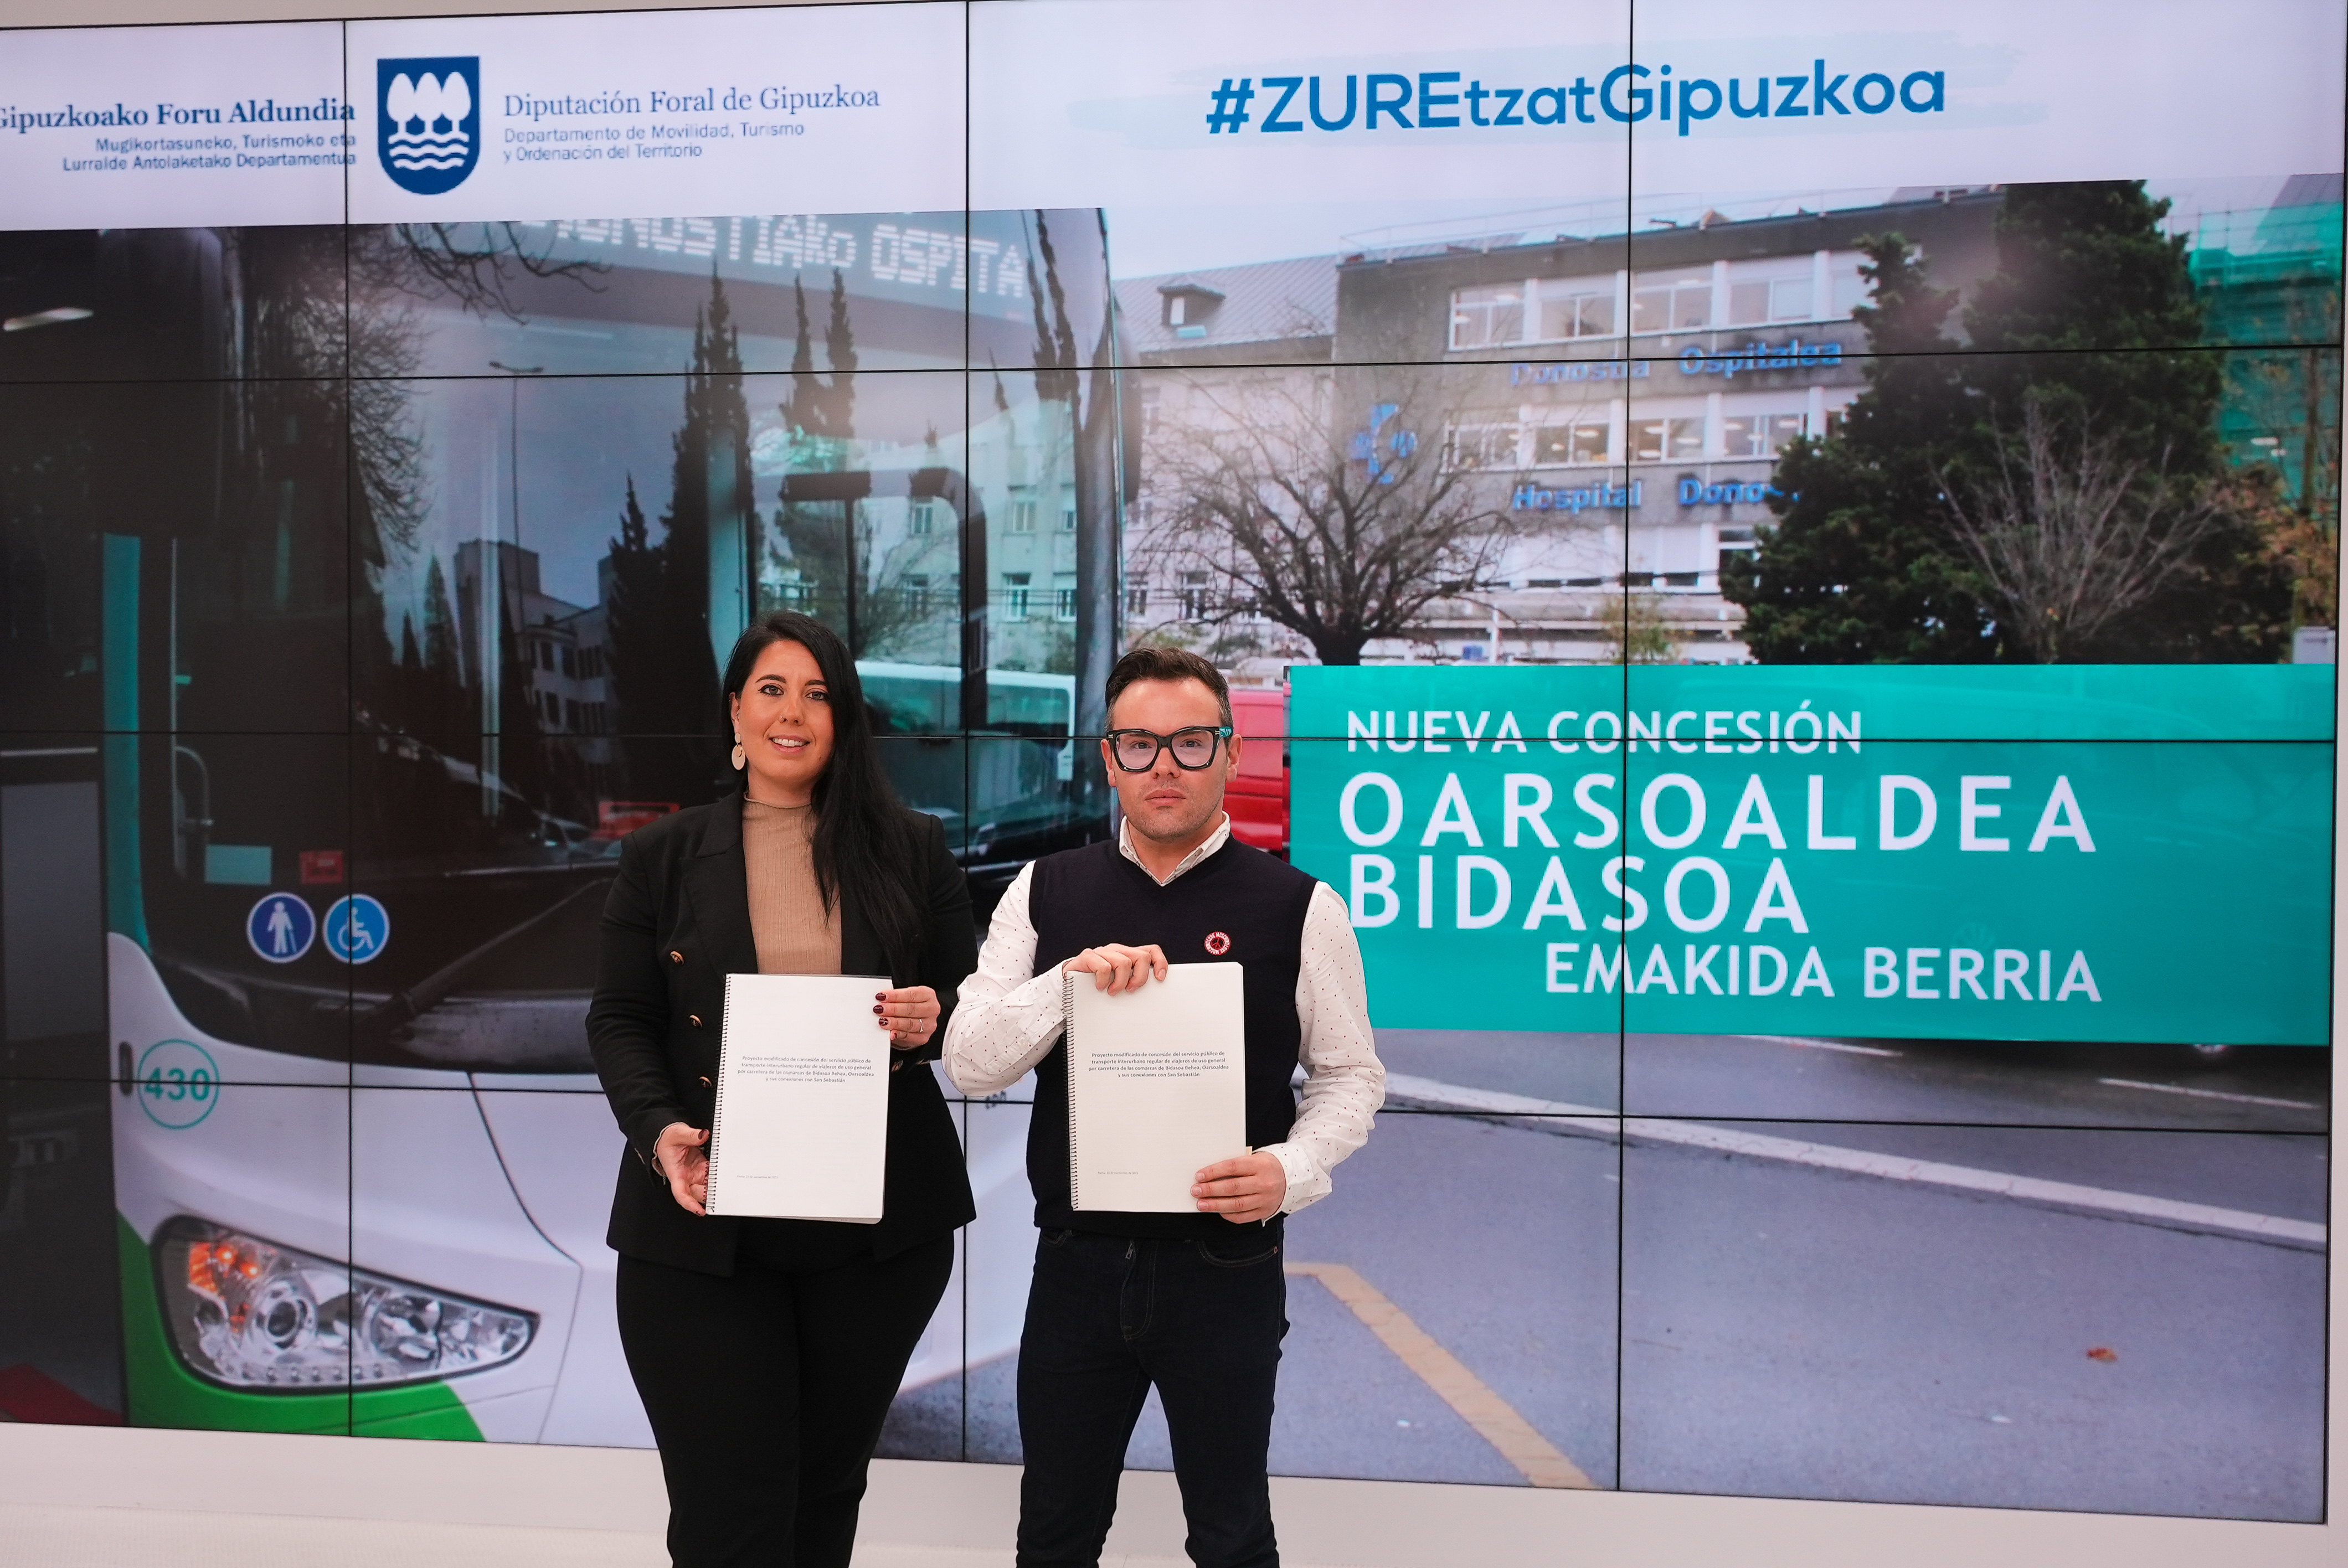 Movilidad saca a licitación el servicio de Lurraldebus en Oarsoaldea y Bidasoa para dar mejor respuesta a las necesidades de la ciudadanía